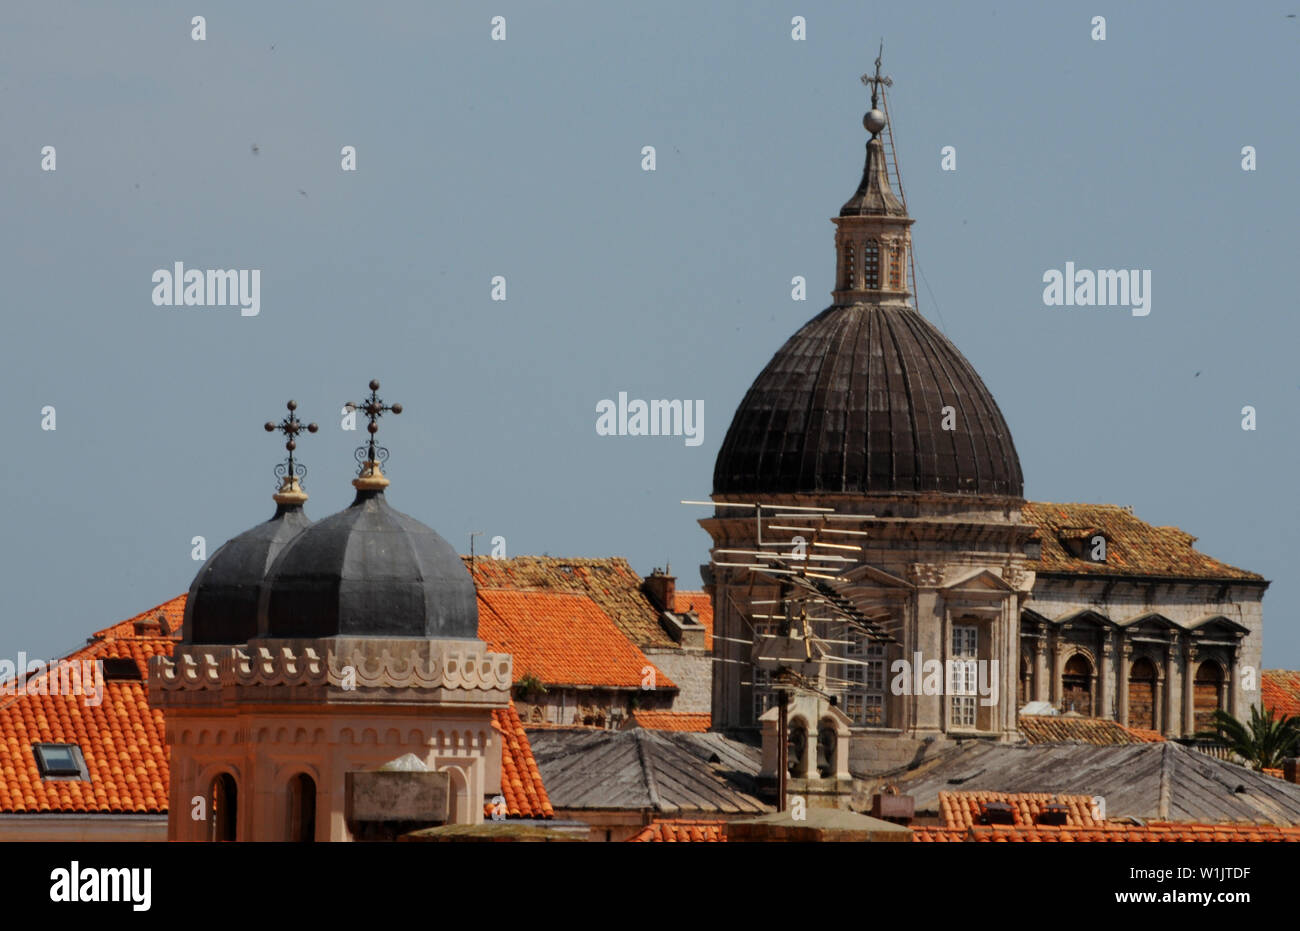 Le cupole e piastrelle di colore arancione formano i tetti della città di Dubrovnik. Foto Stock